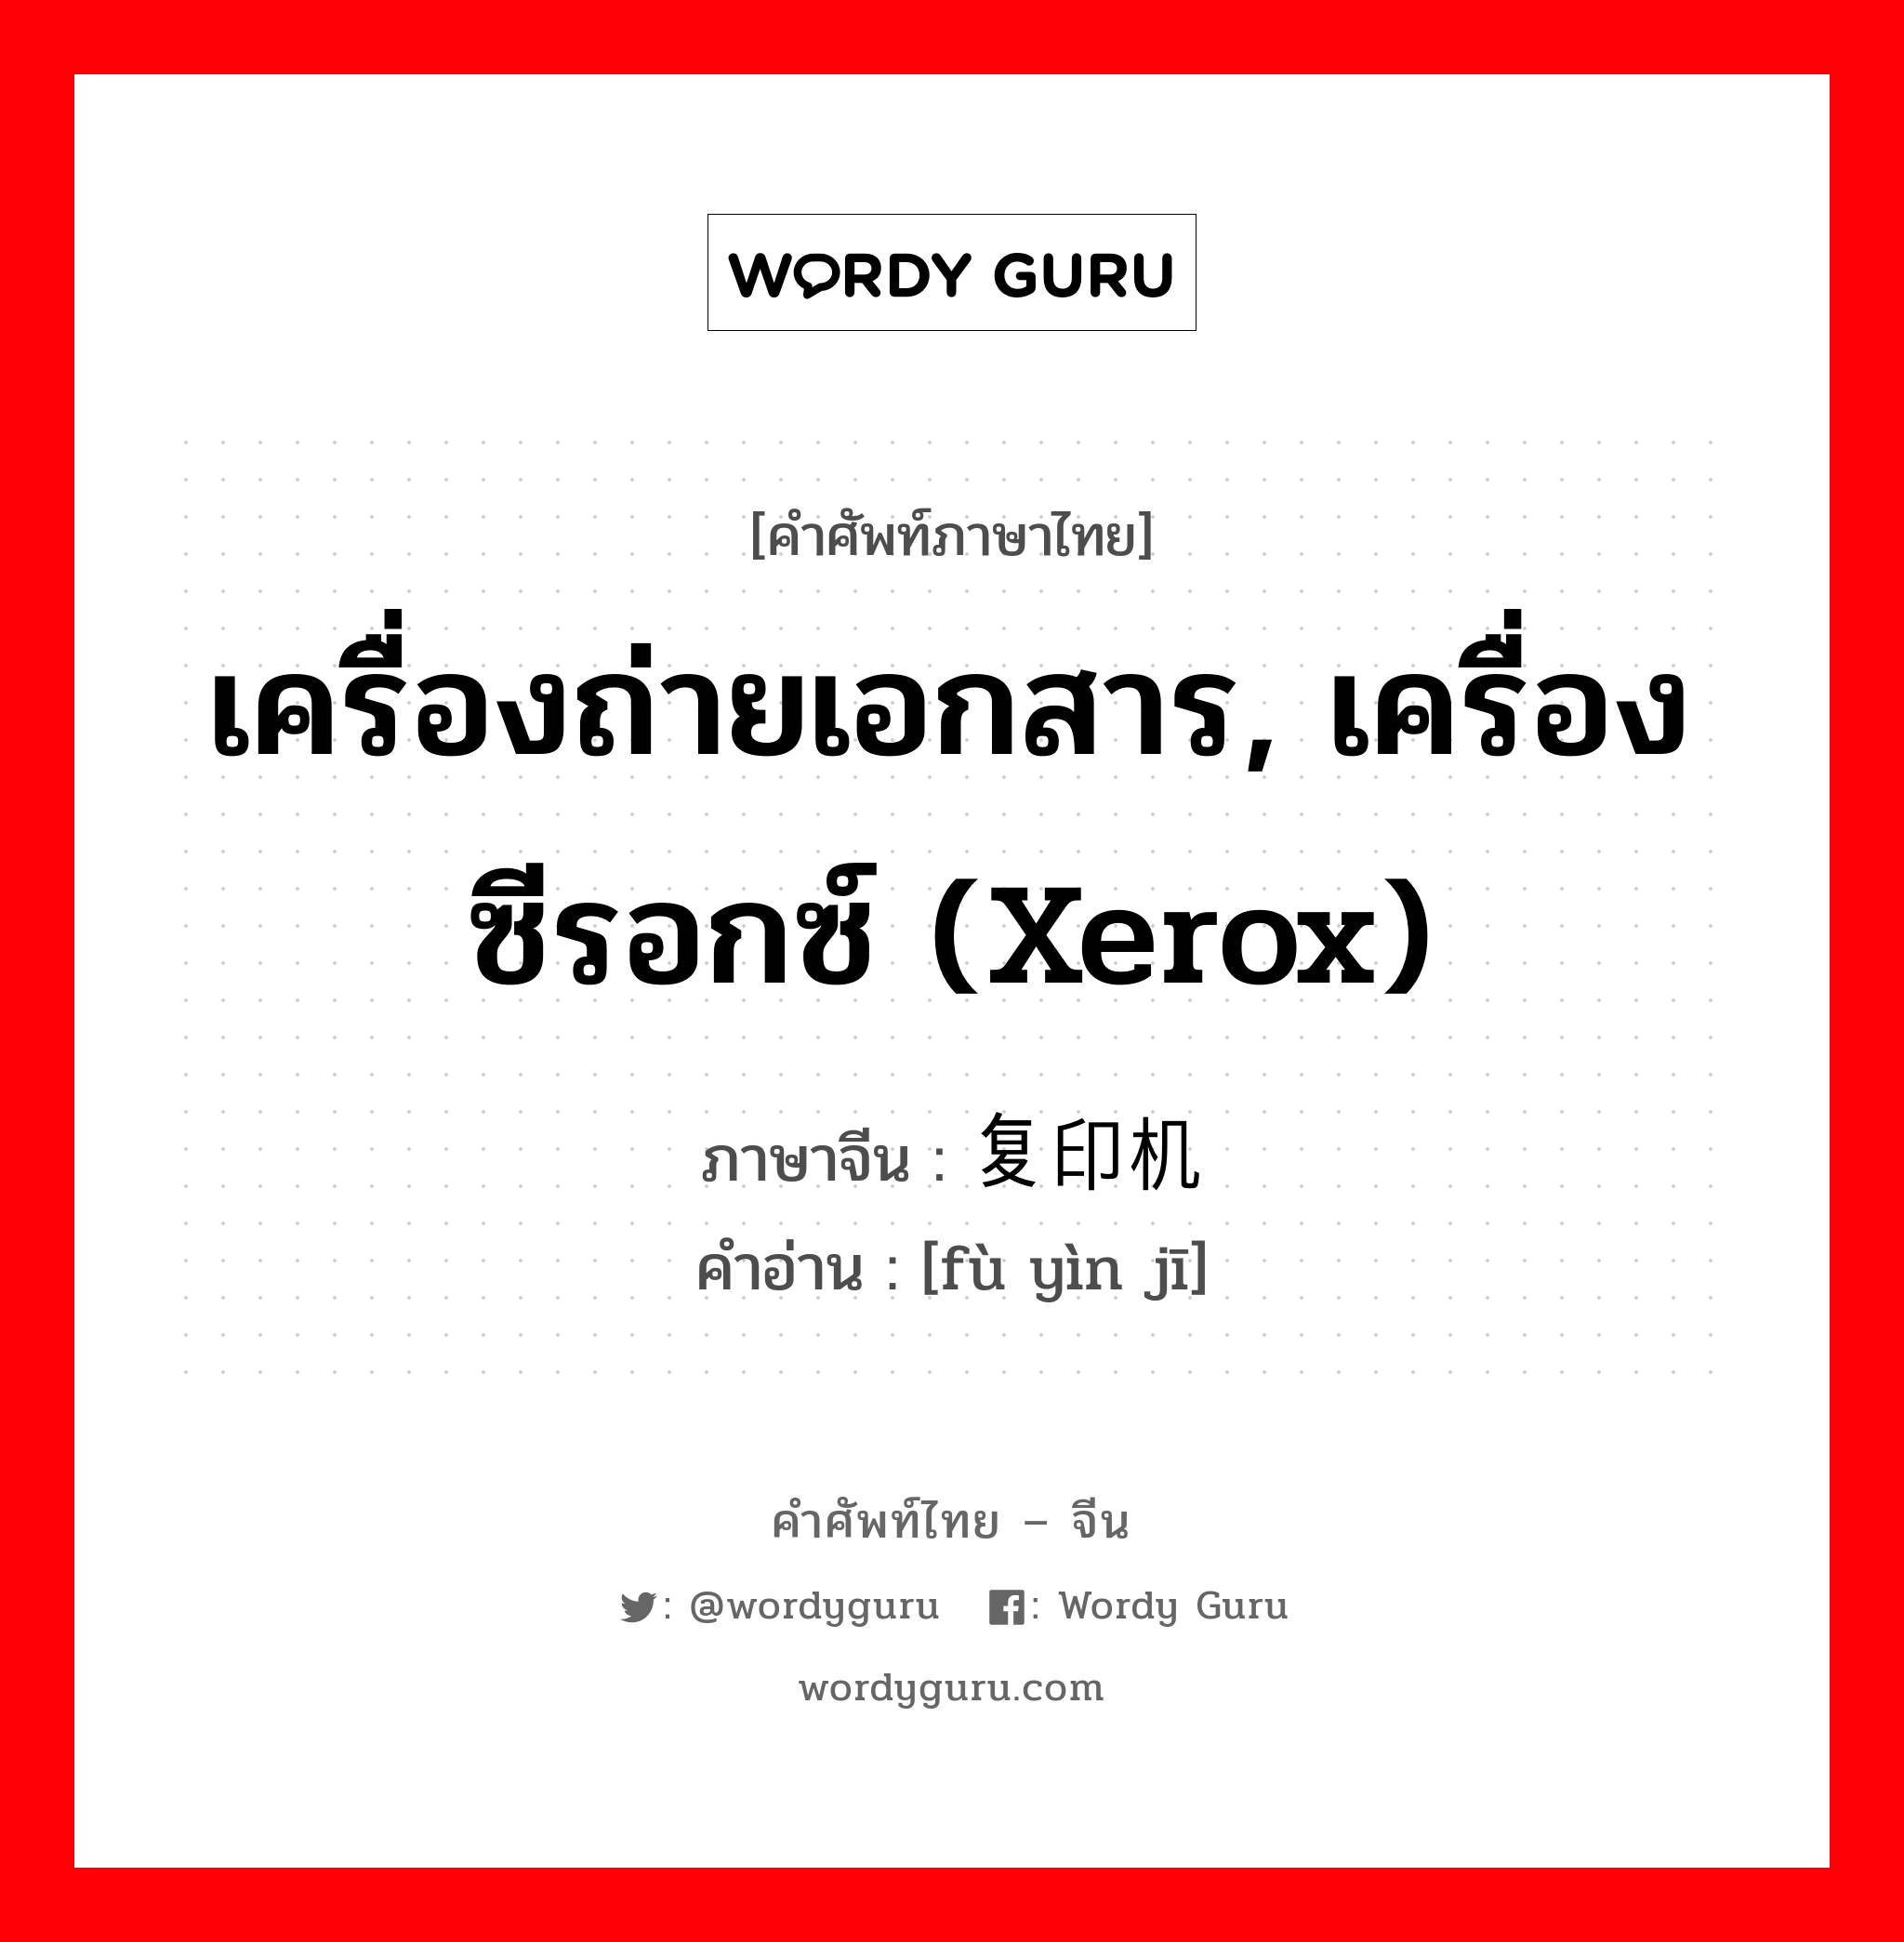 เครื่องถ่ายเอกสาร, เครื่องซีรอกซ์ (xerox) ภาษาจีนคืออะไร, คำศัพท์ภาษาไทย - จีน เครื่องถ่ายเอกสาร, เครื่องซีรอกซ์ (xerox) ภาษาจีน 复印机 คำอ่าน [fù yìn jī]